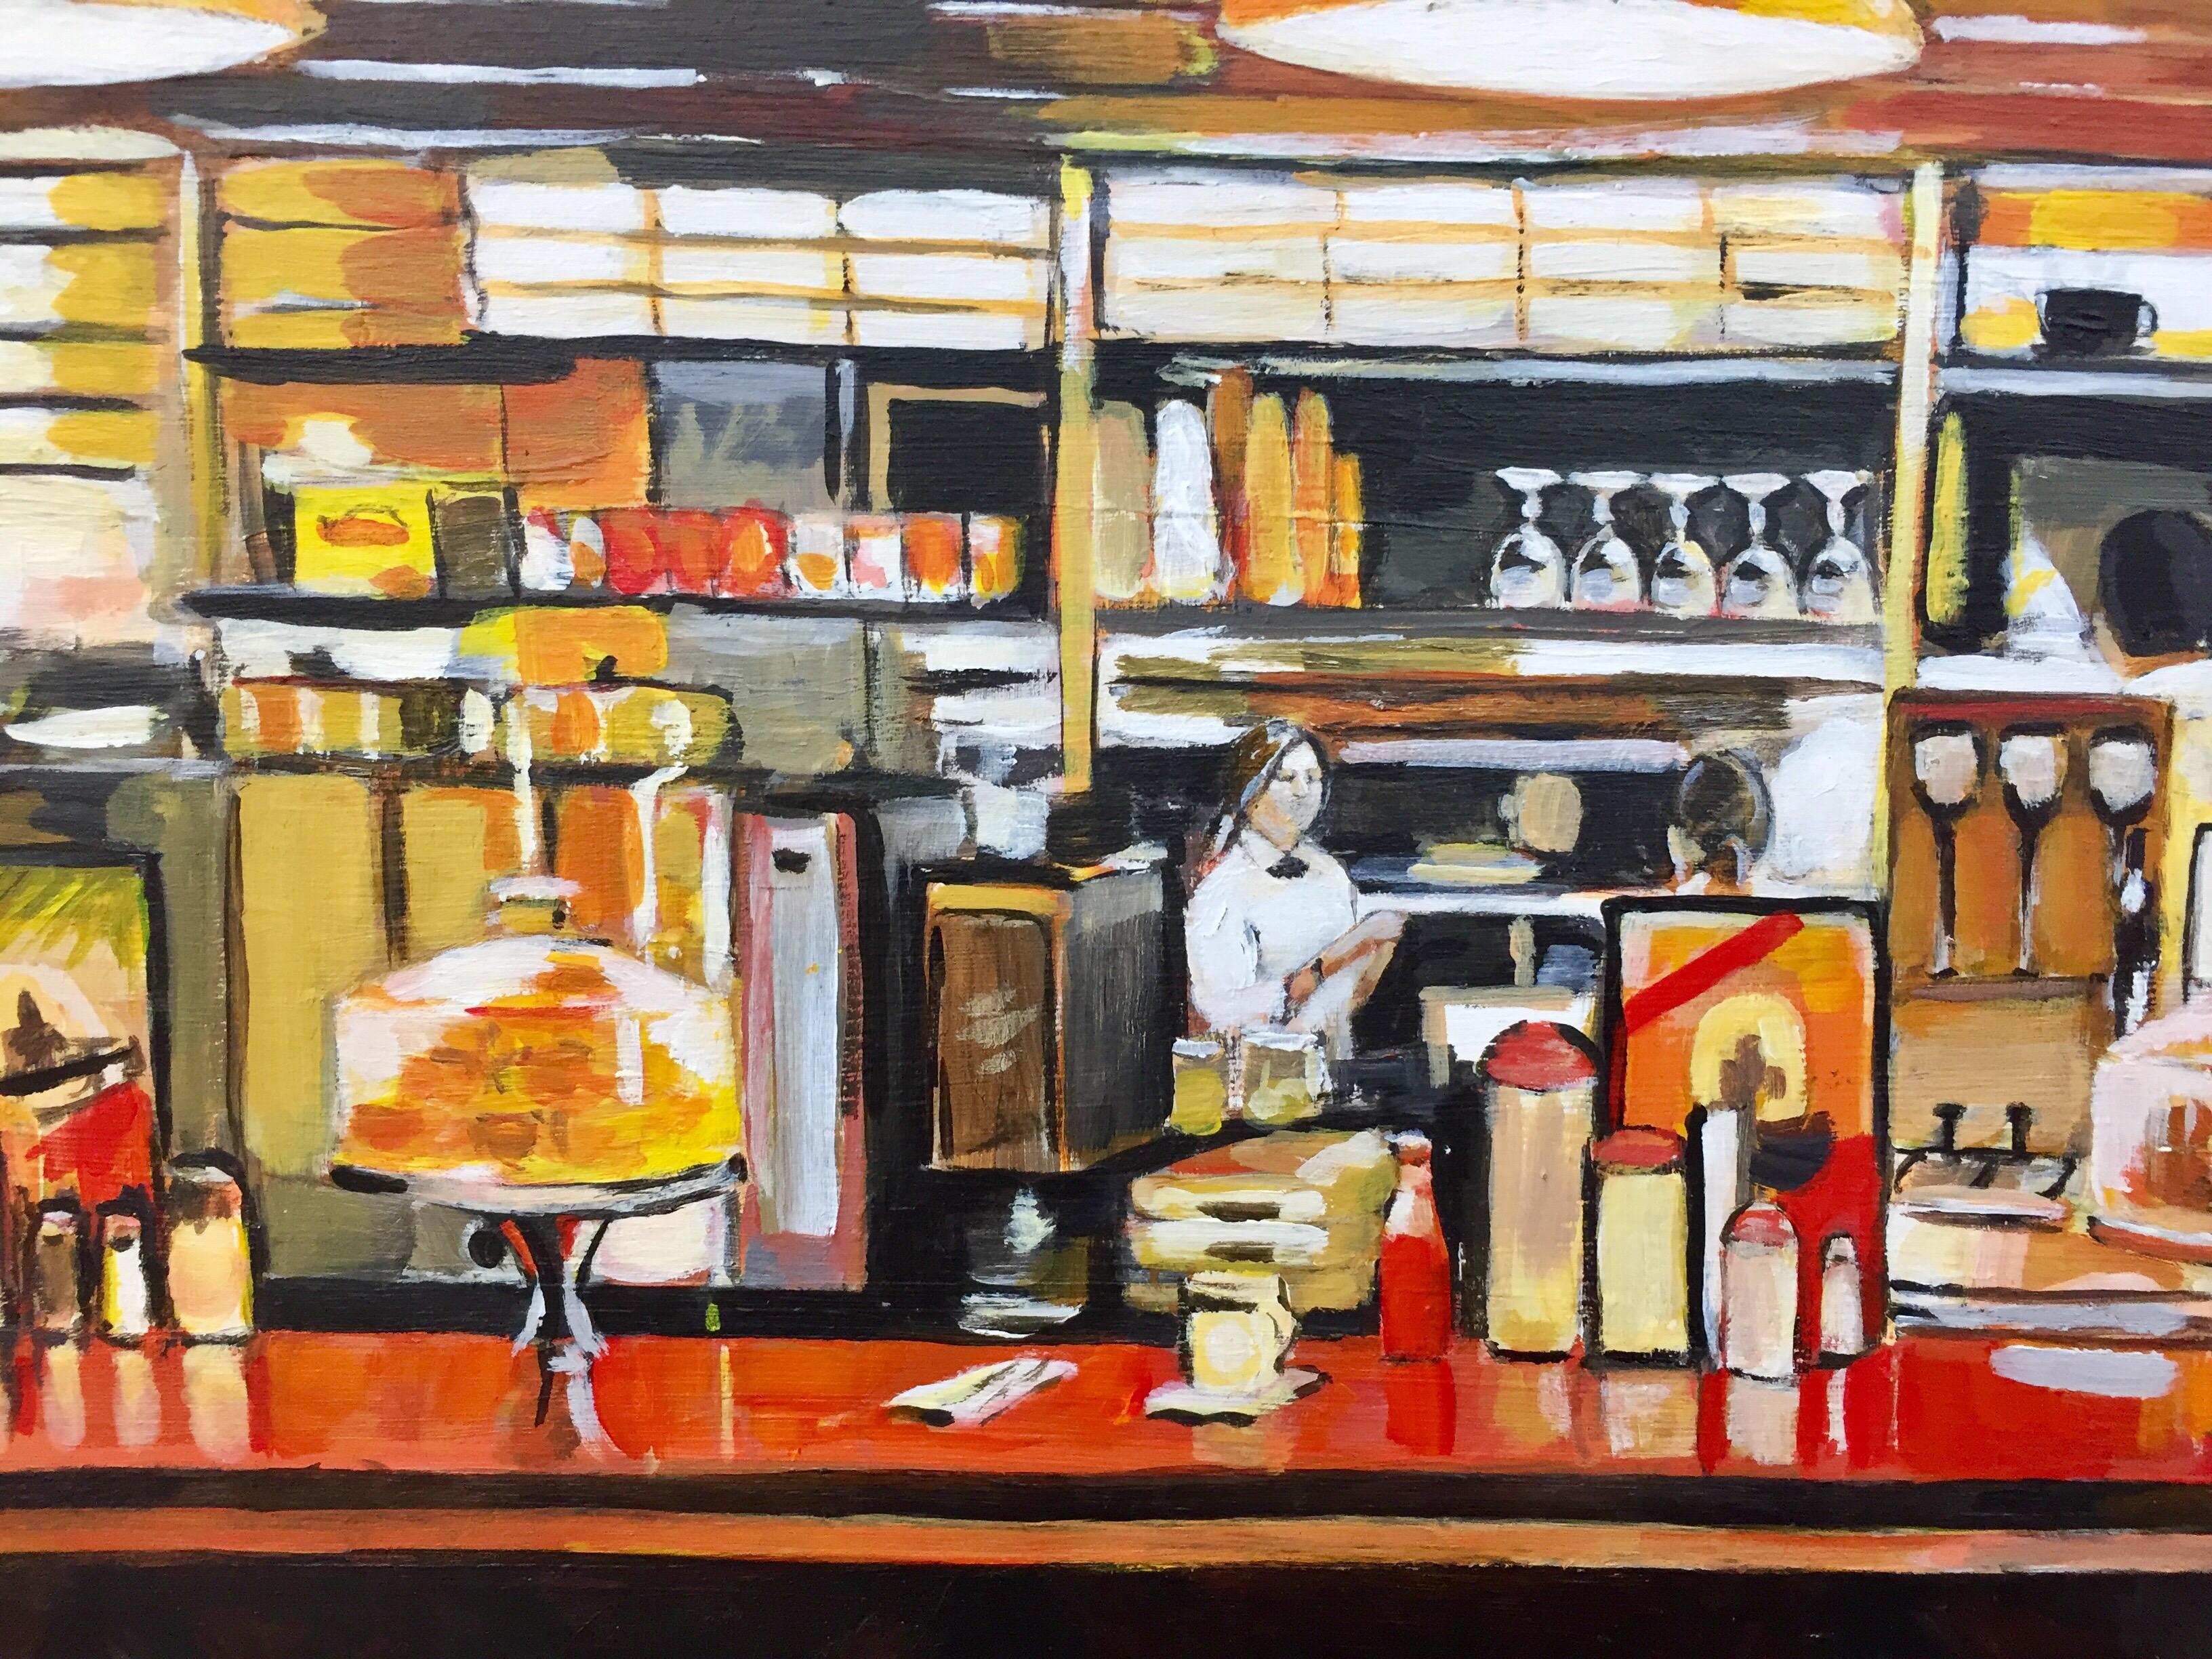 Amerikanisches Diner-Gemälde der führenden britischen Künstlerin für urbane Landschaften, Angela Wakefield. Gemälde von amerikanischen Diners, Food Courts, Truck Stops, Tankstellen, Stillleben und allen Aspekten der 